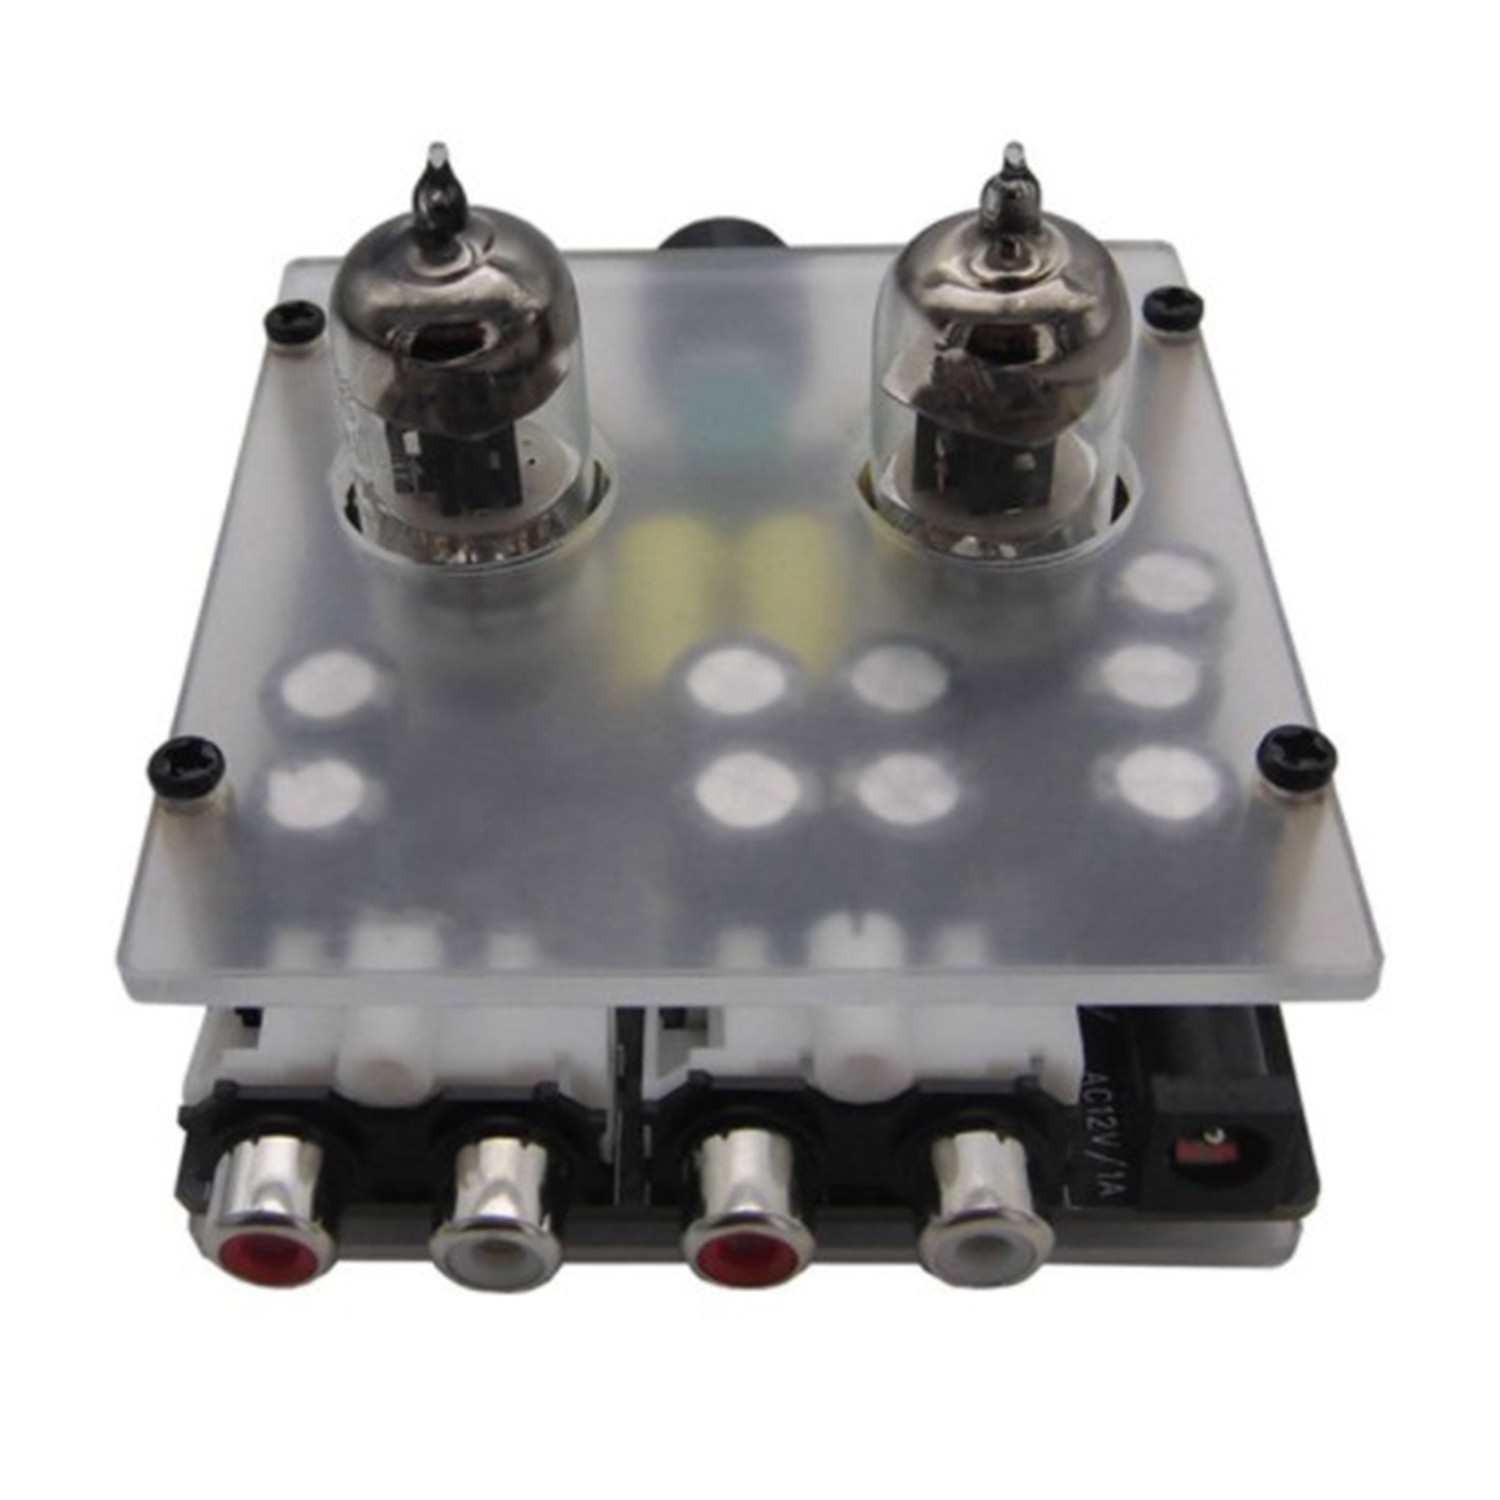 6J3 Vacuum Tube Preamp Amplifier Board Buffer Amp Speaker Amplifier N7VN